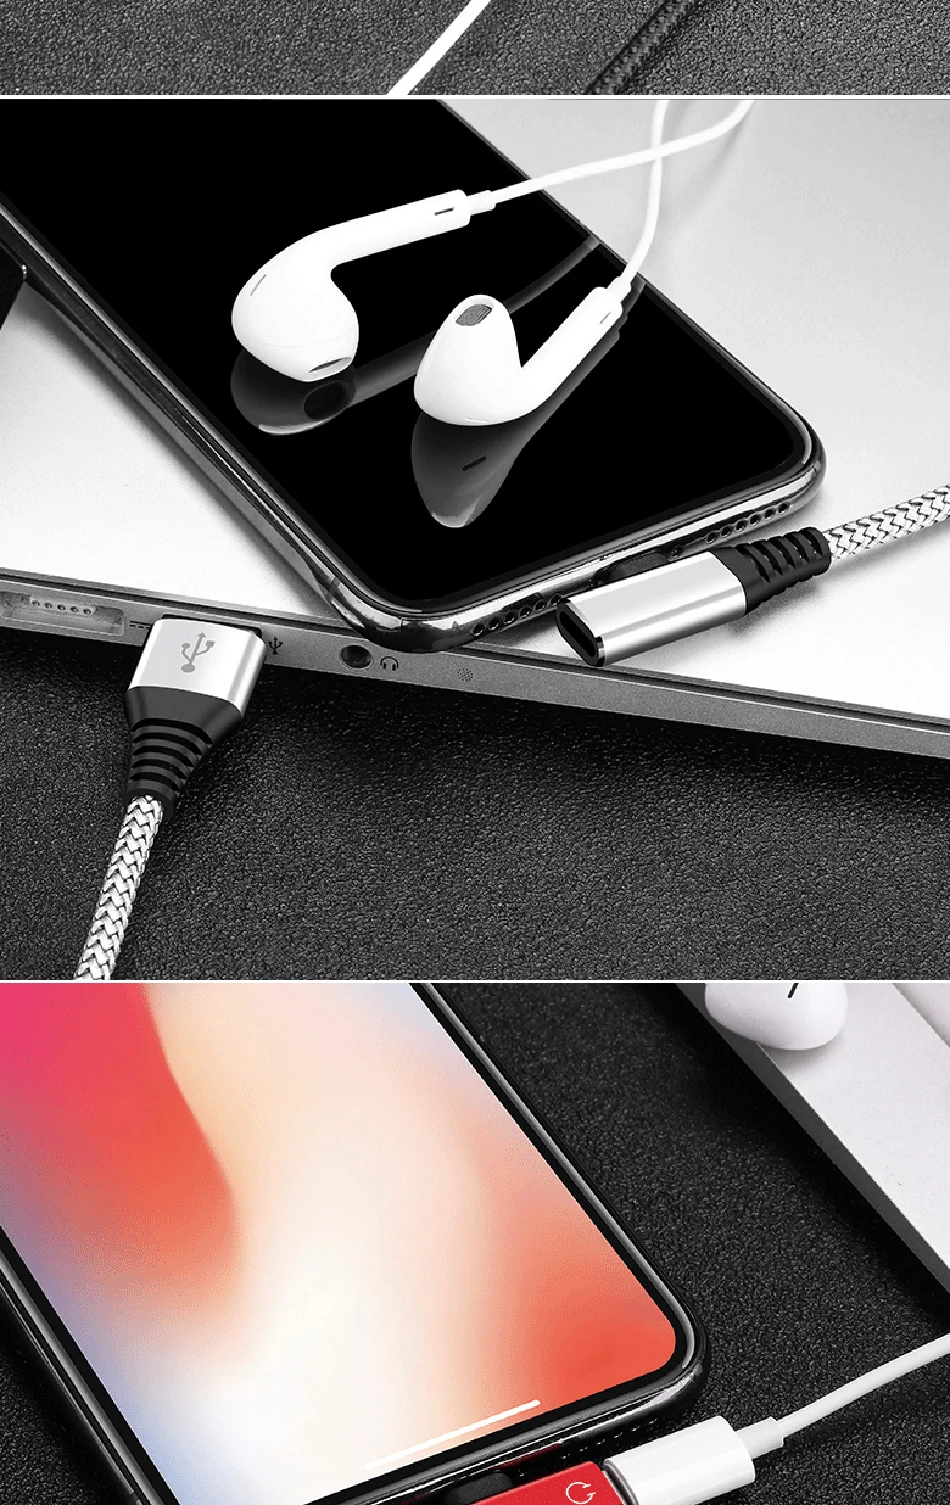 ACCEZZ двойное освещение зарядное устройство аудио адаптер для iphone X 8 7 Plus адаптеры для зарядки разветвитель AUX кабели 1,2 м для Apple XS MAX XR